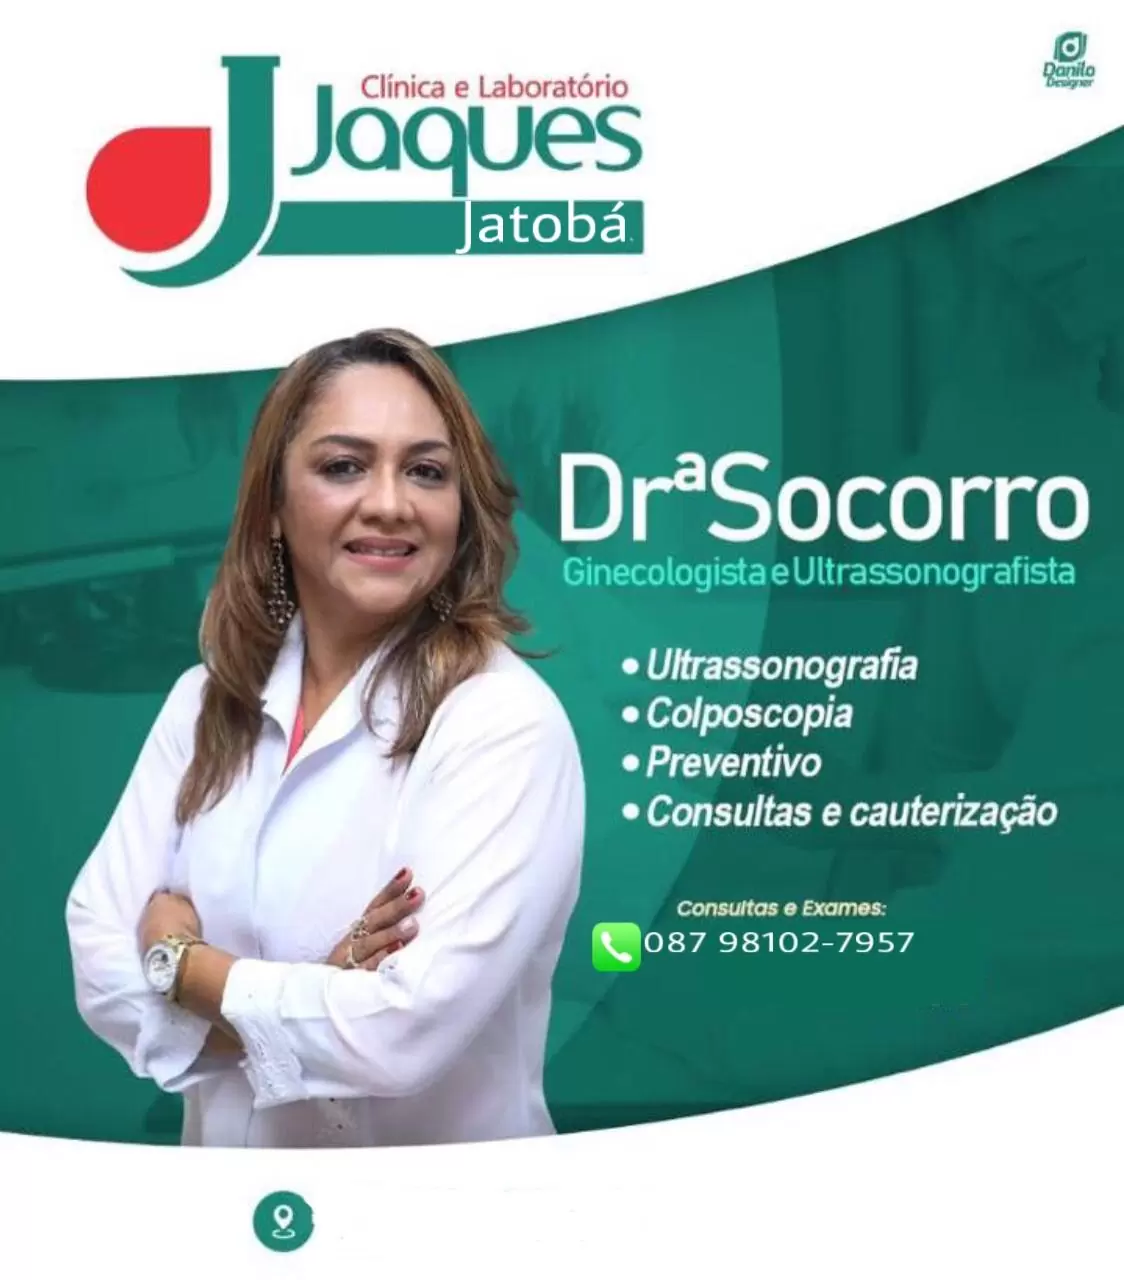 Jatobá: Drª Socorro Realizará Consultas Em Ginecologia E Ultrassonografia nesta Quinta-Feira (03/12) Na Clínica E Laboratório Jaques